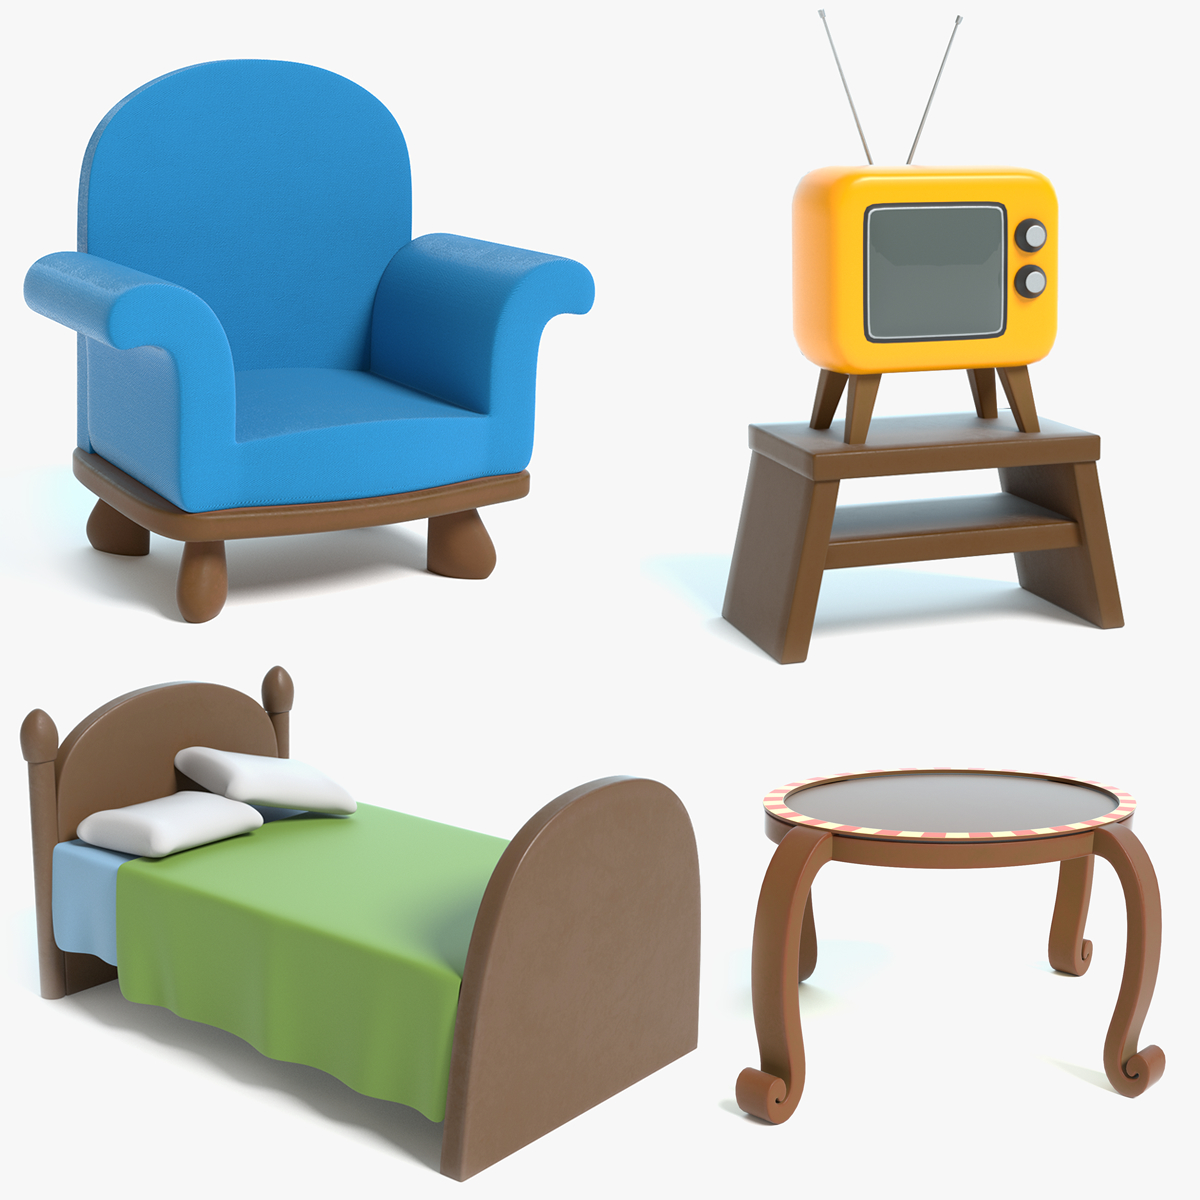 Sweet Home 3D 1.7: бесплатный инструмент для 3D-расстановки мебели